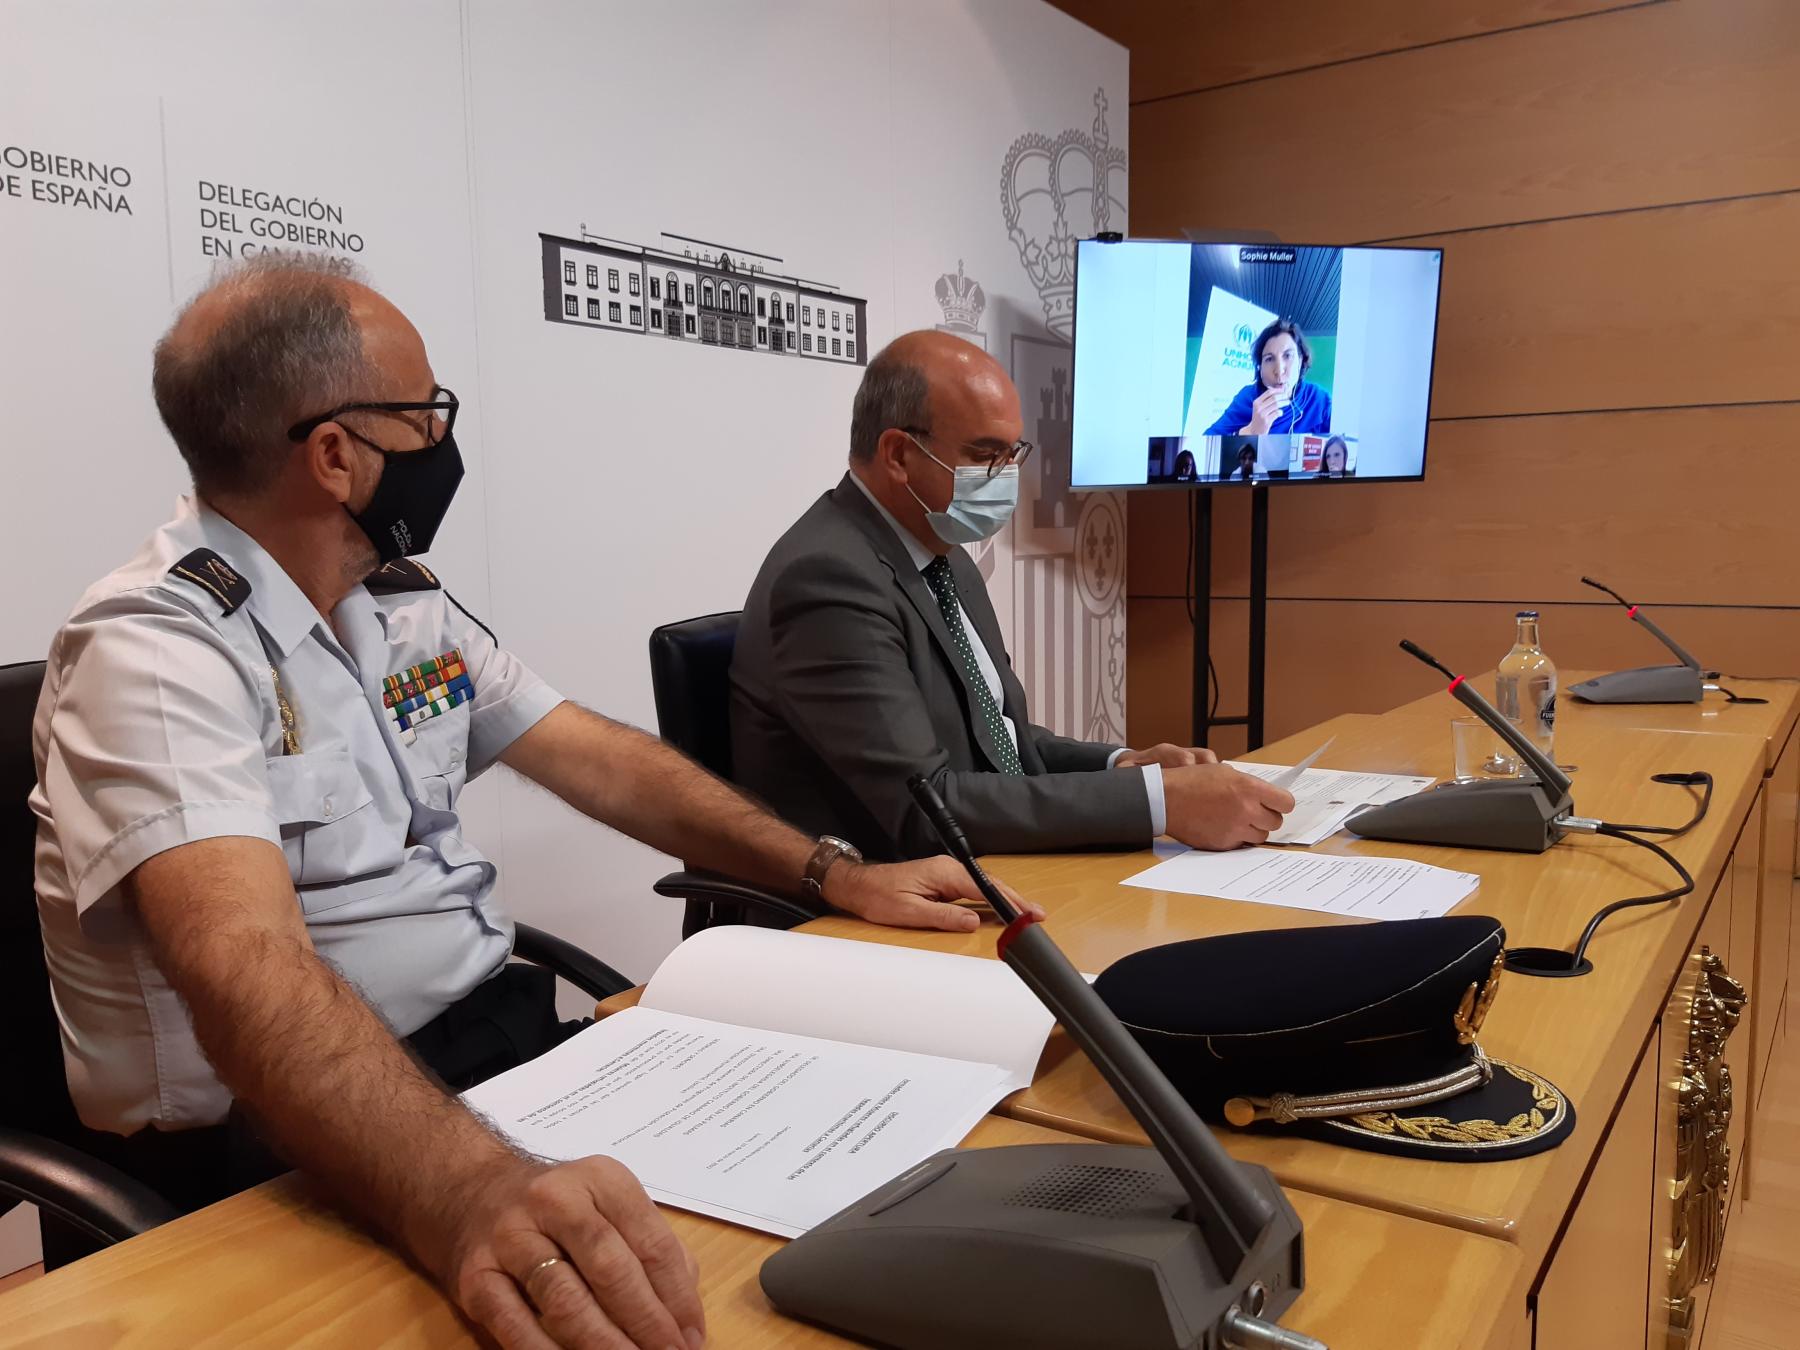 La Delegación del Gobierno en Canarias y ACNUR colaboran en la promoción de la igualdad desde la perspectiva de las mujeres refugiadas